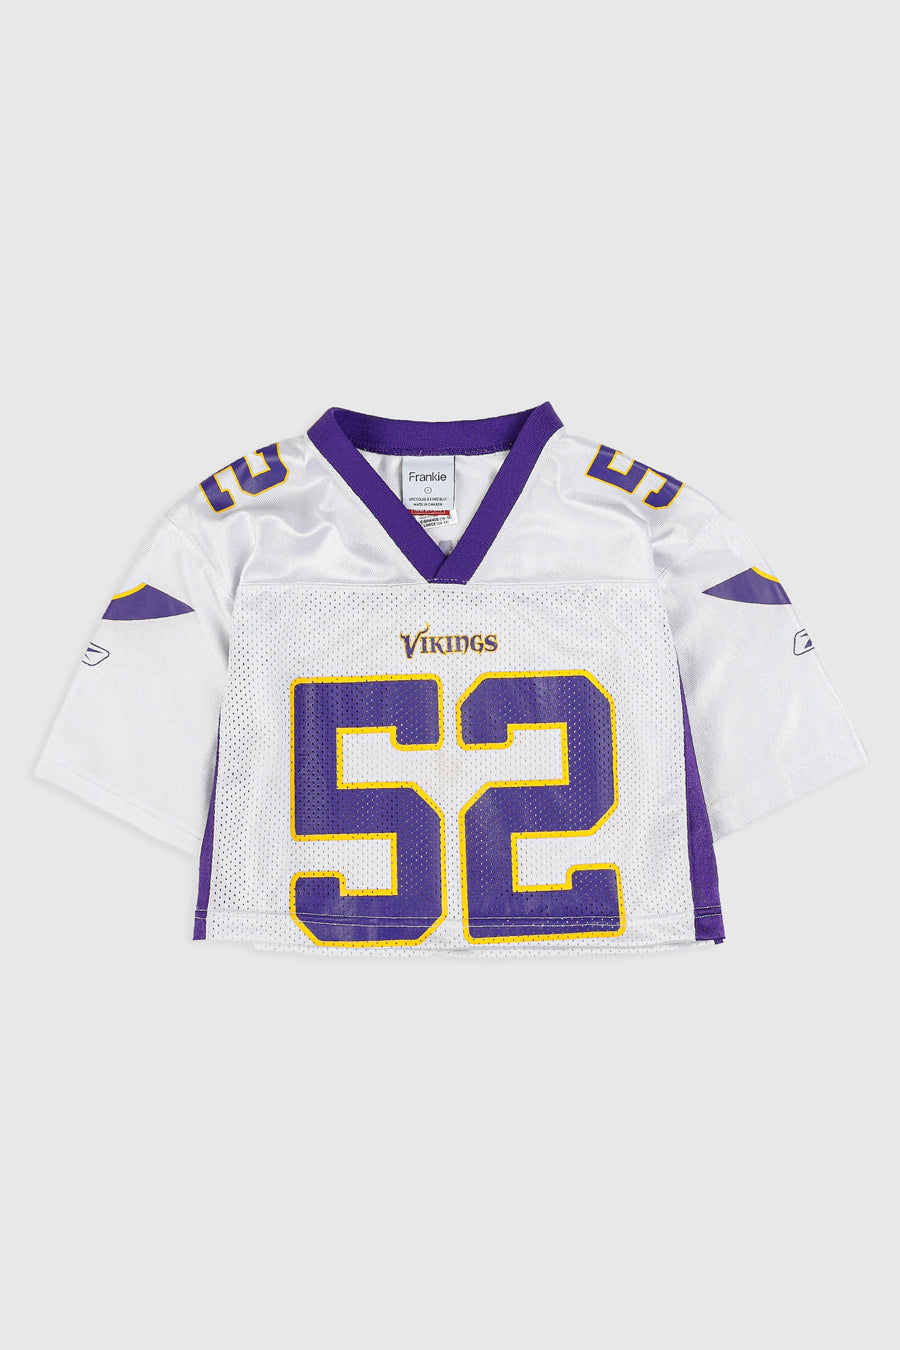 Rework Viking NFL Crop Jersey - S